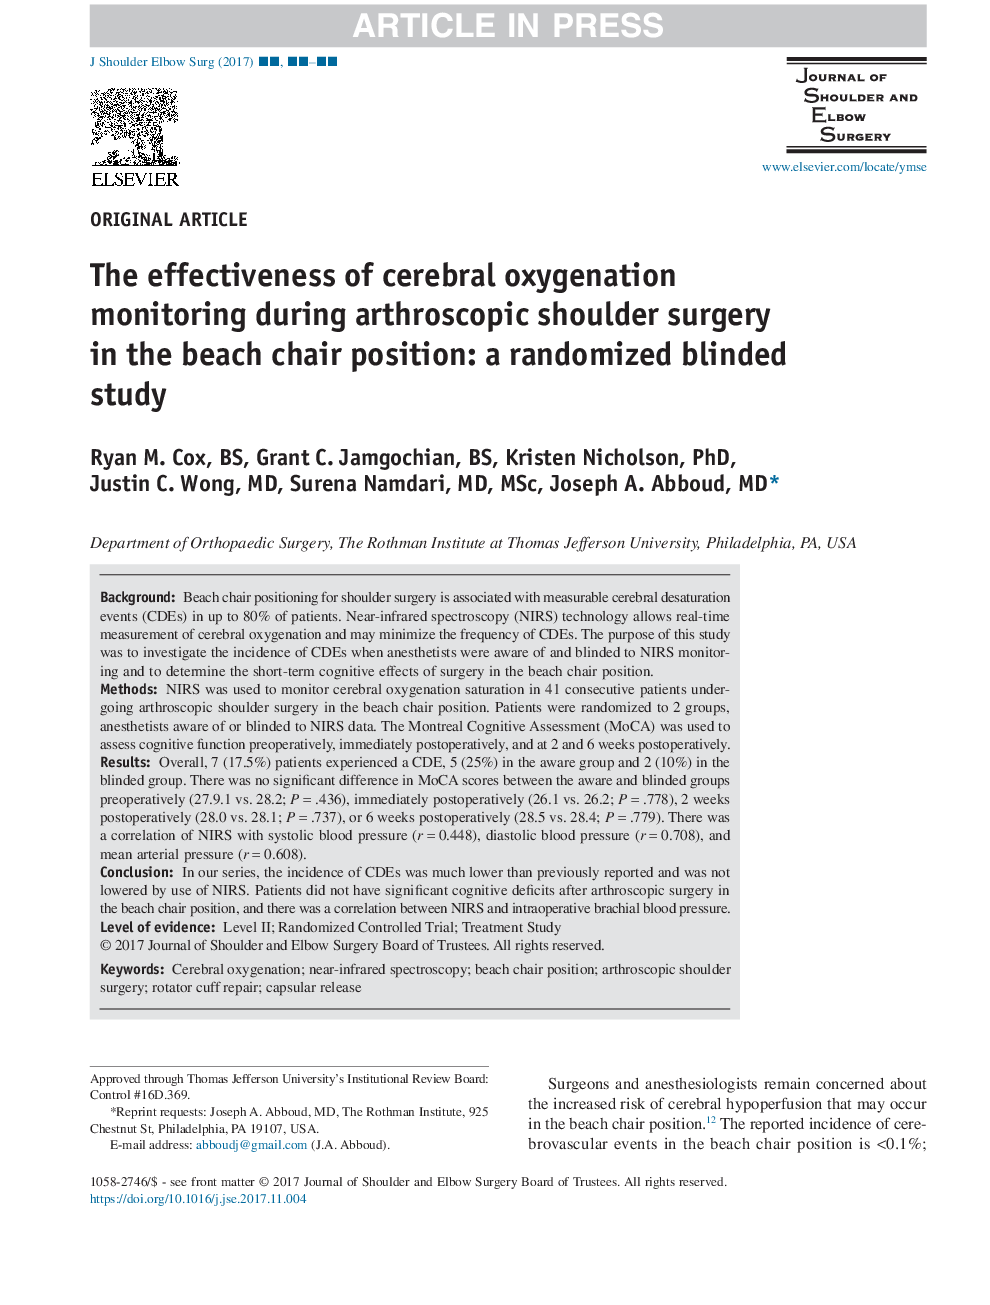 اثربخشی نظارت اکسیژن مغزی در طی عمل جراحی شانه آرتروسکوپی در موقعیت صندلی ساحل: یک مطالعه کورپور تصادفی 